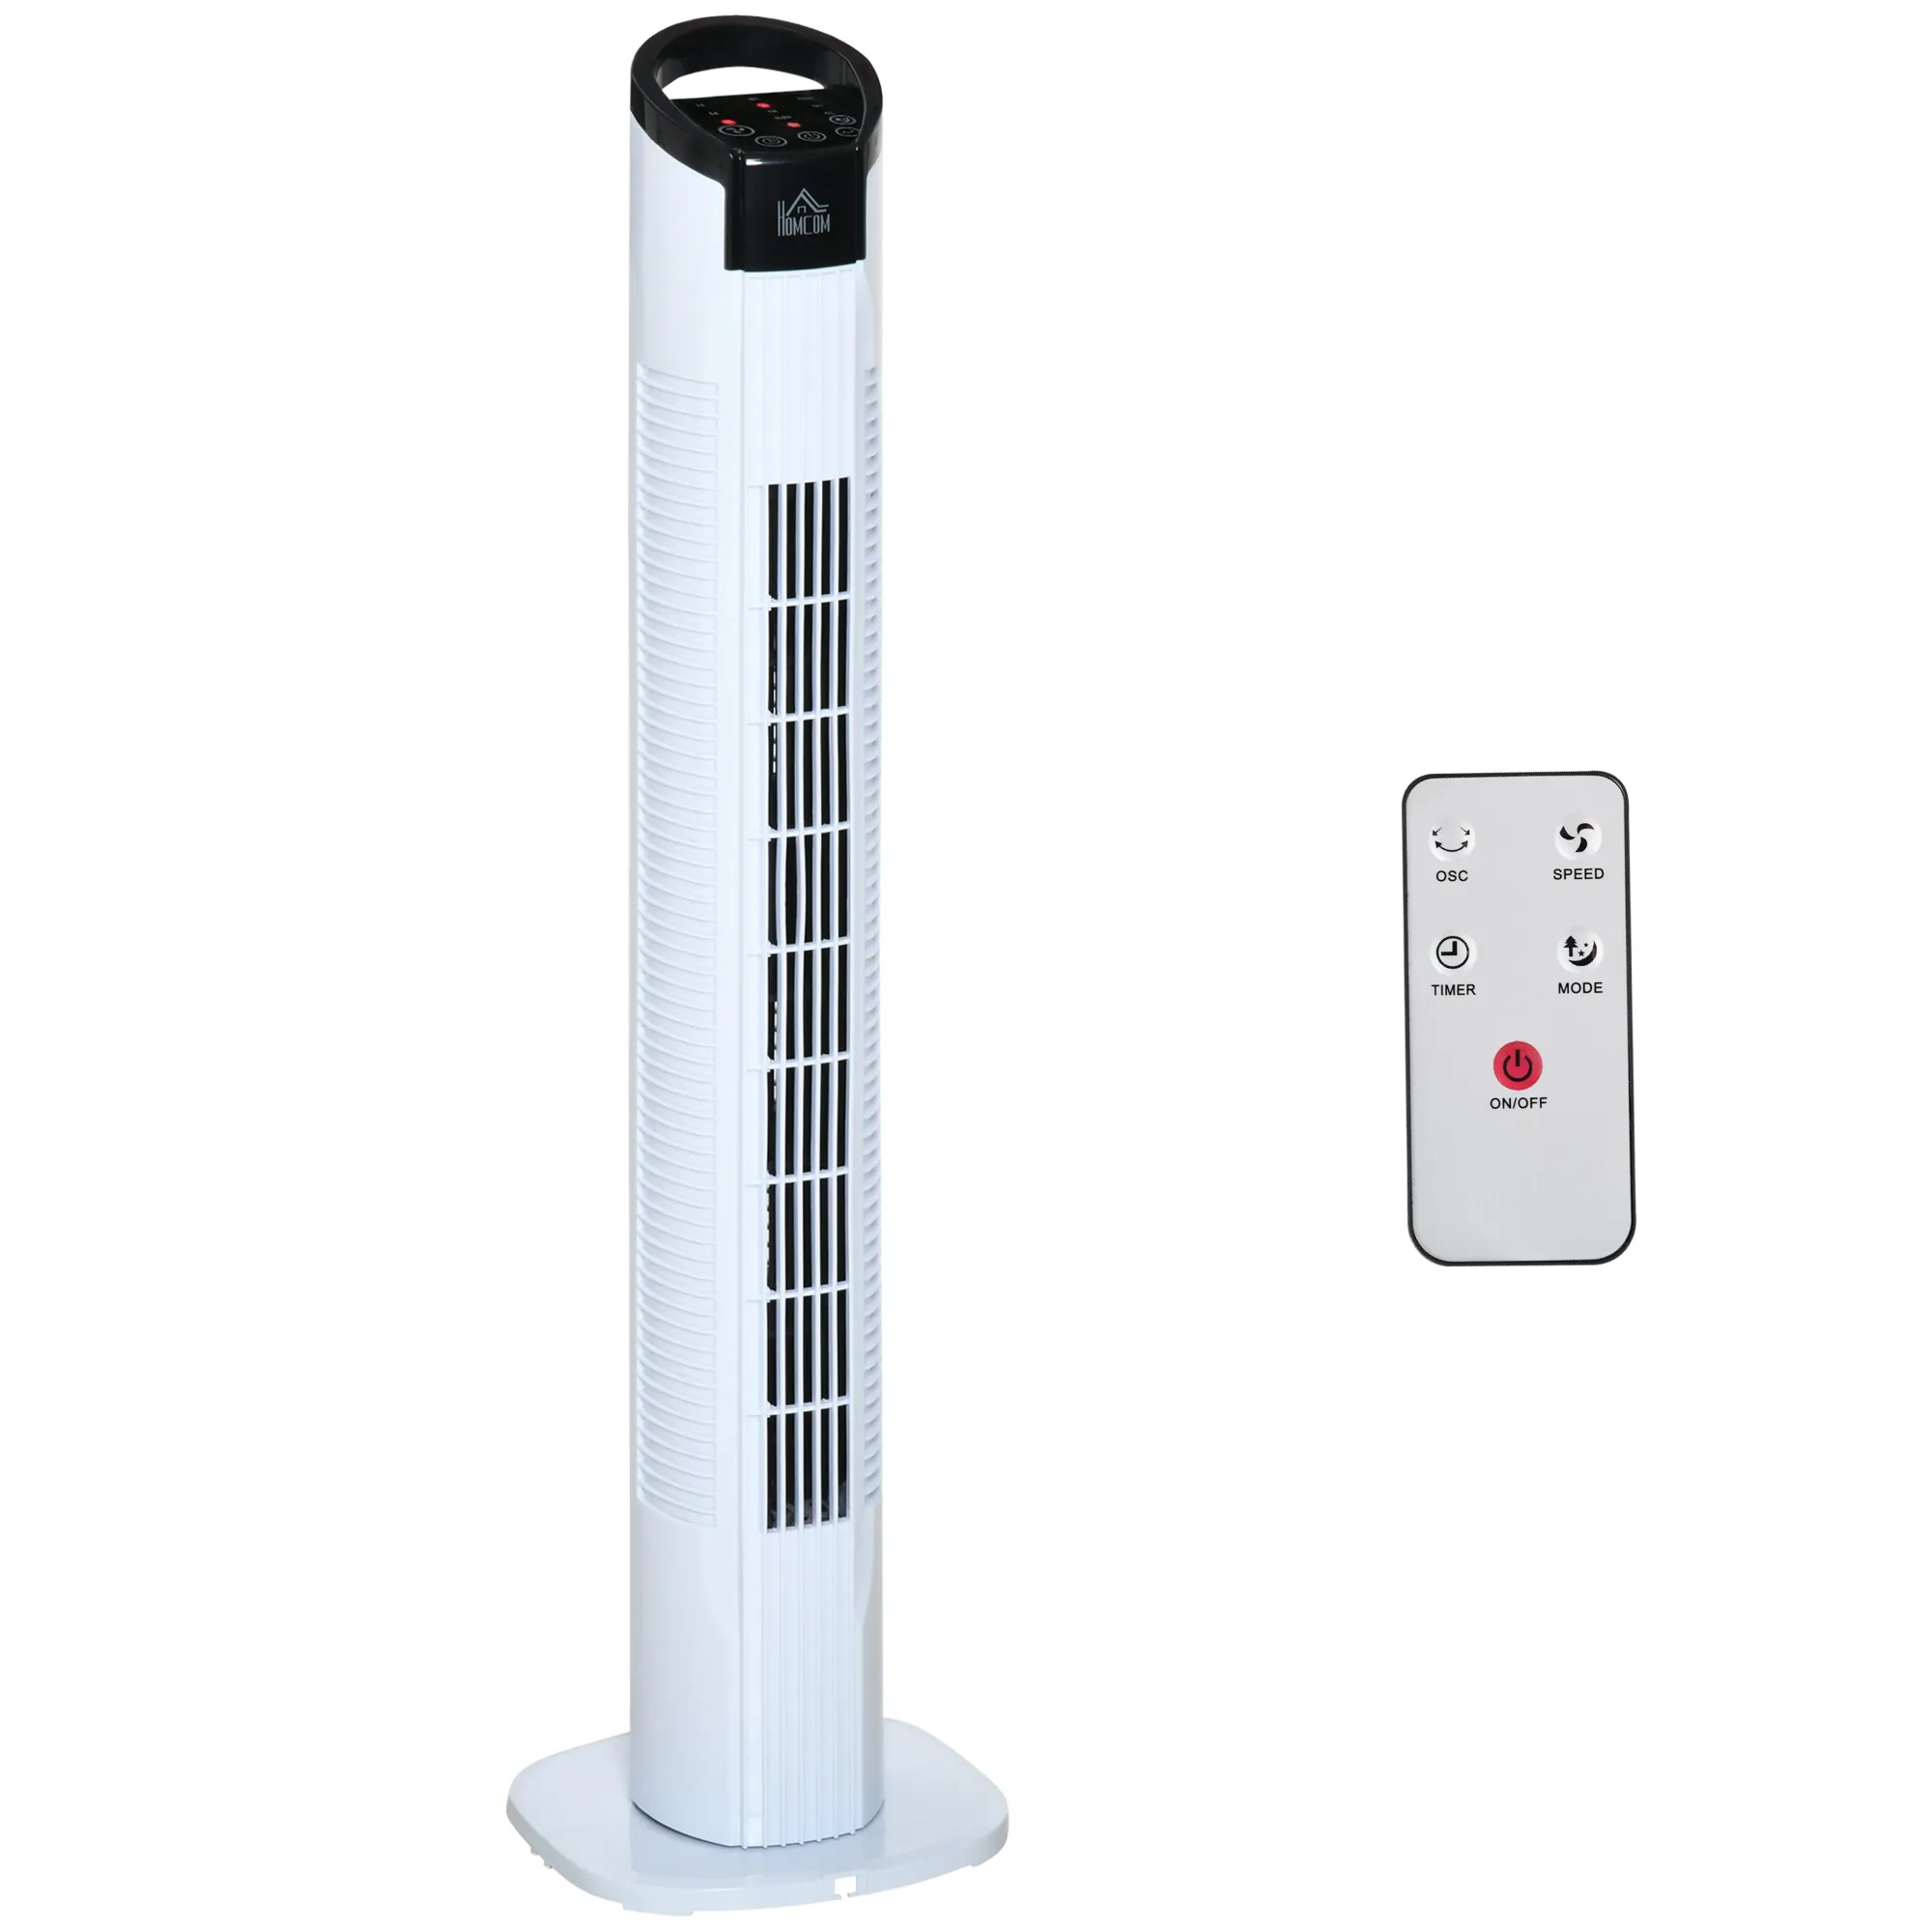  Ventilatore a Colonna Torre con Telecomando e Oscillazione, 3 Funzioni e 3 Velocità, Timer 7.5 Ore, Diametro 20x78.5cm